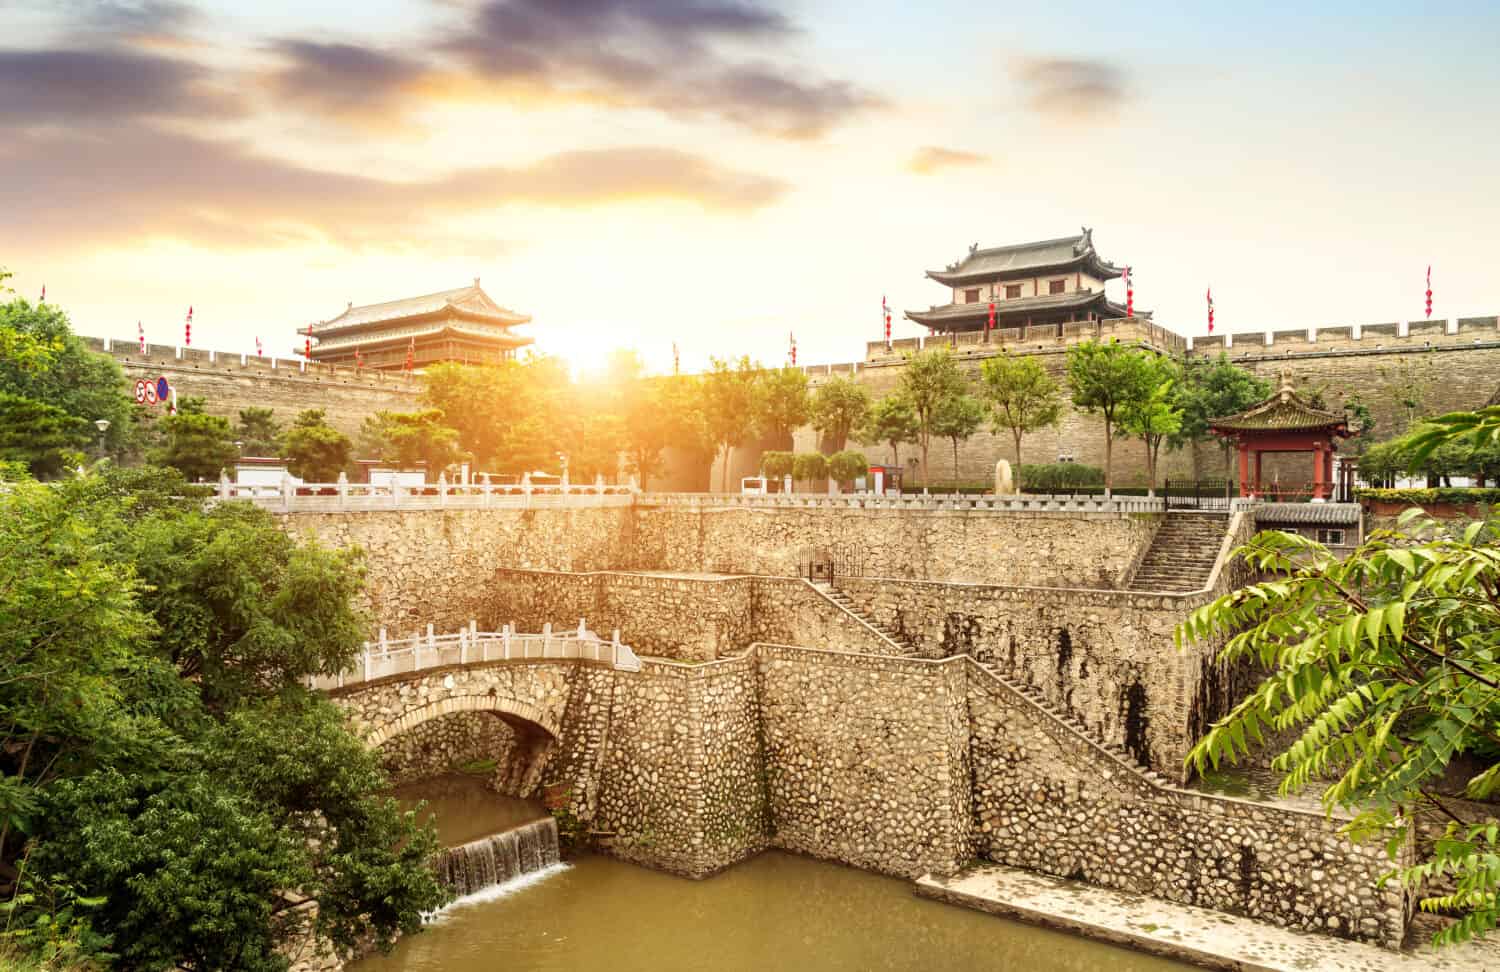 Xi'an ancient city wall and moat, China Shaanxi.